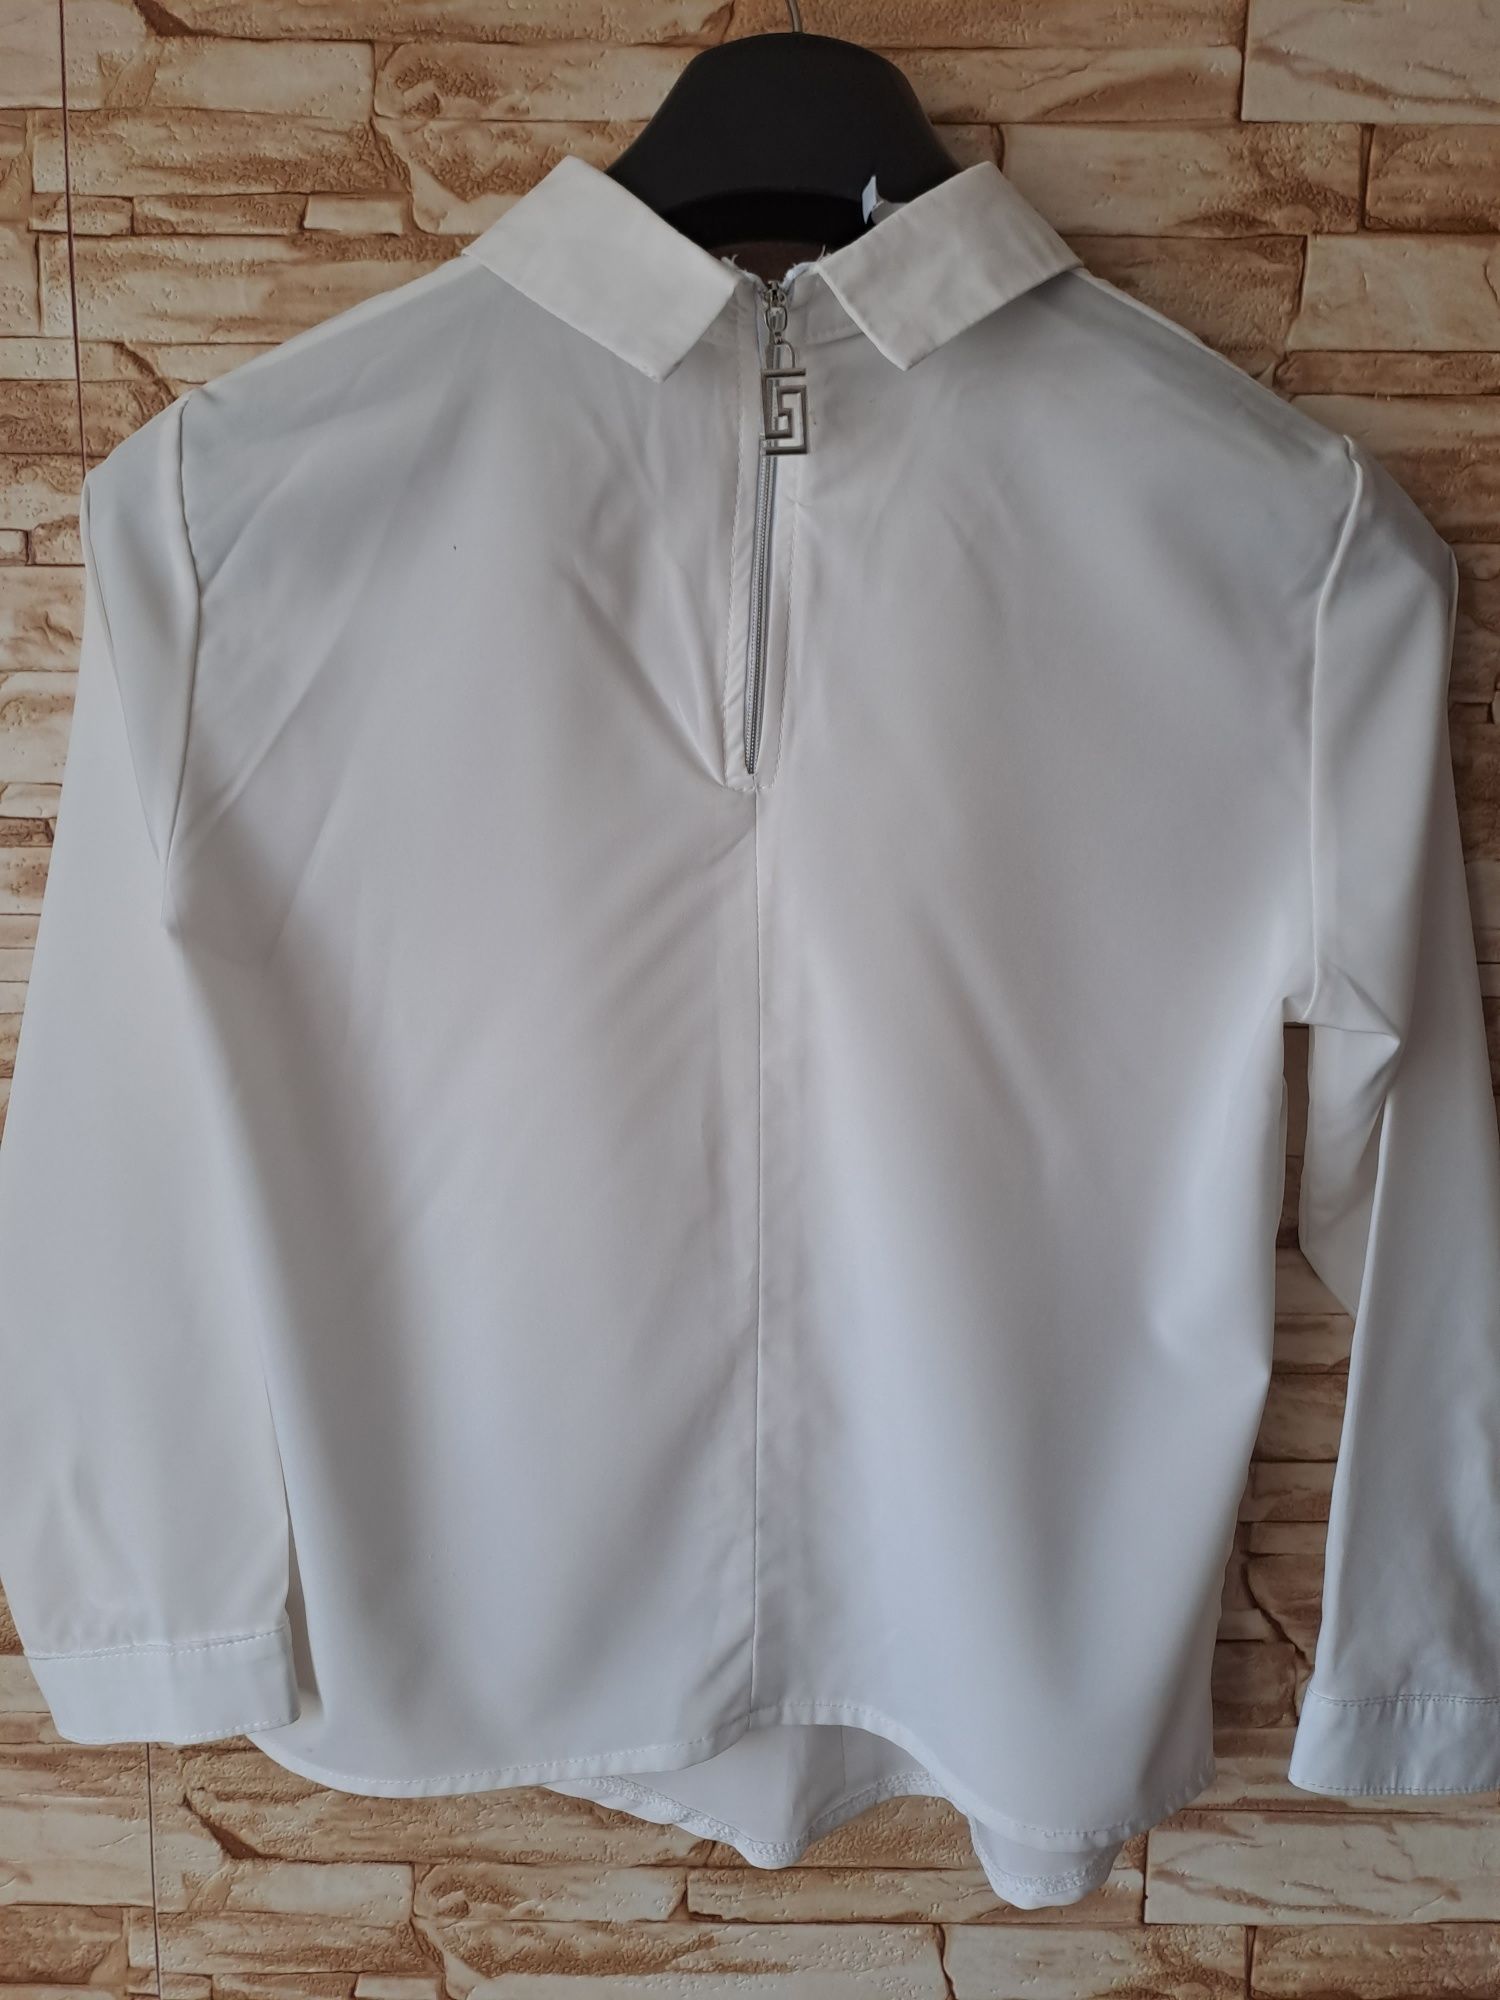 Блузка 42-44 розмір, молочного кольору, б/в, стан нової